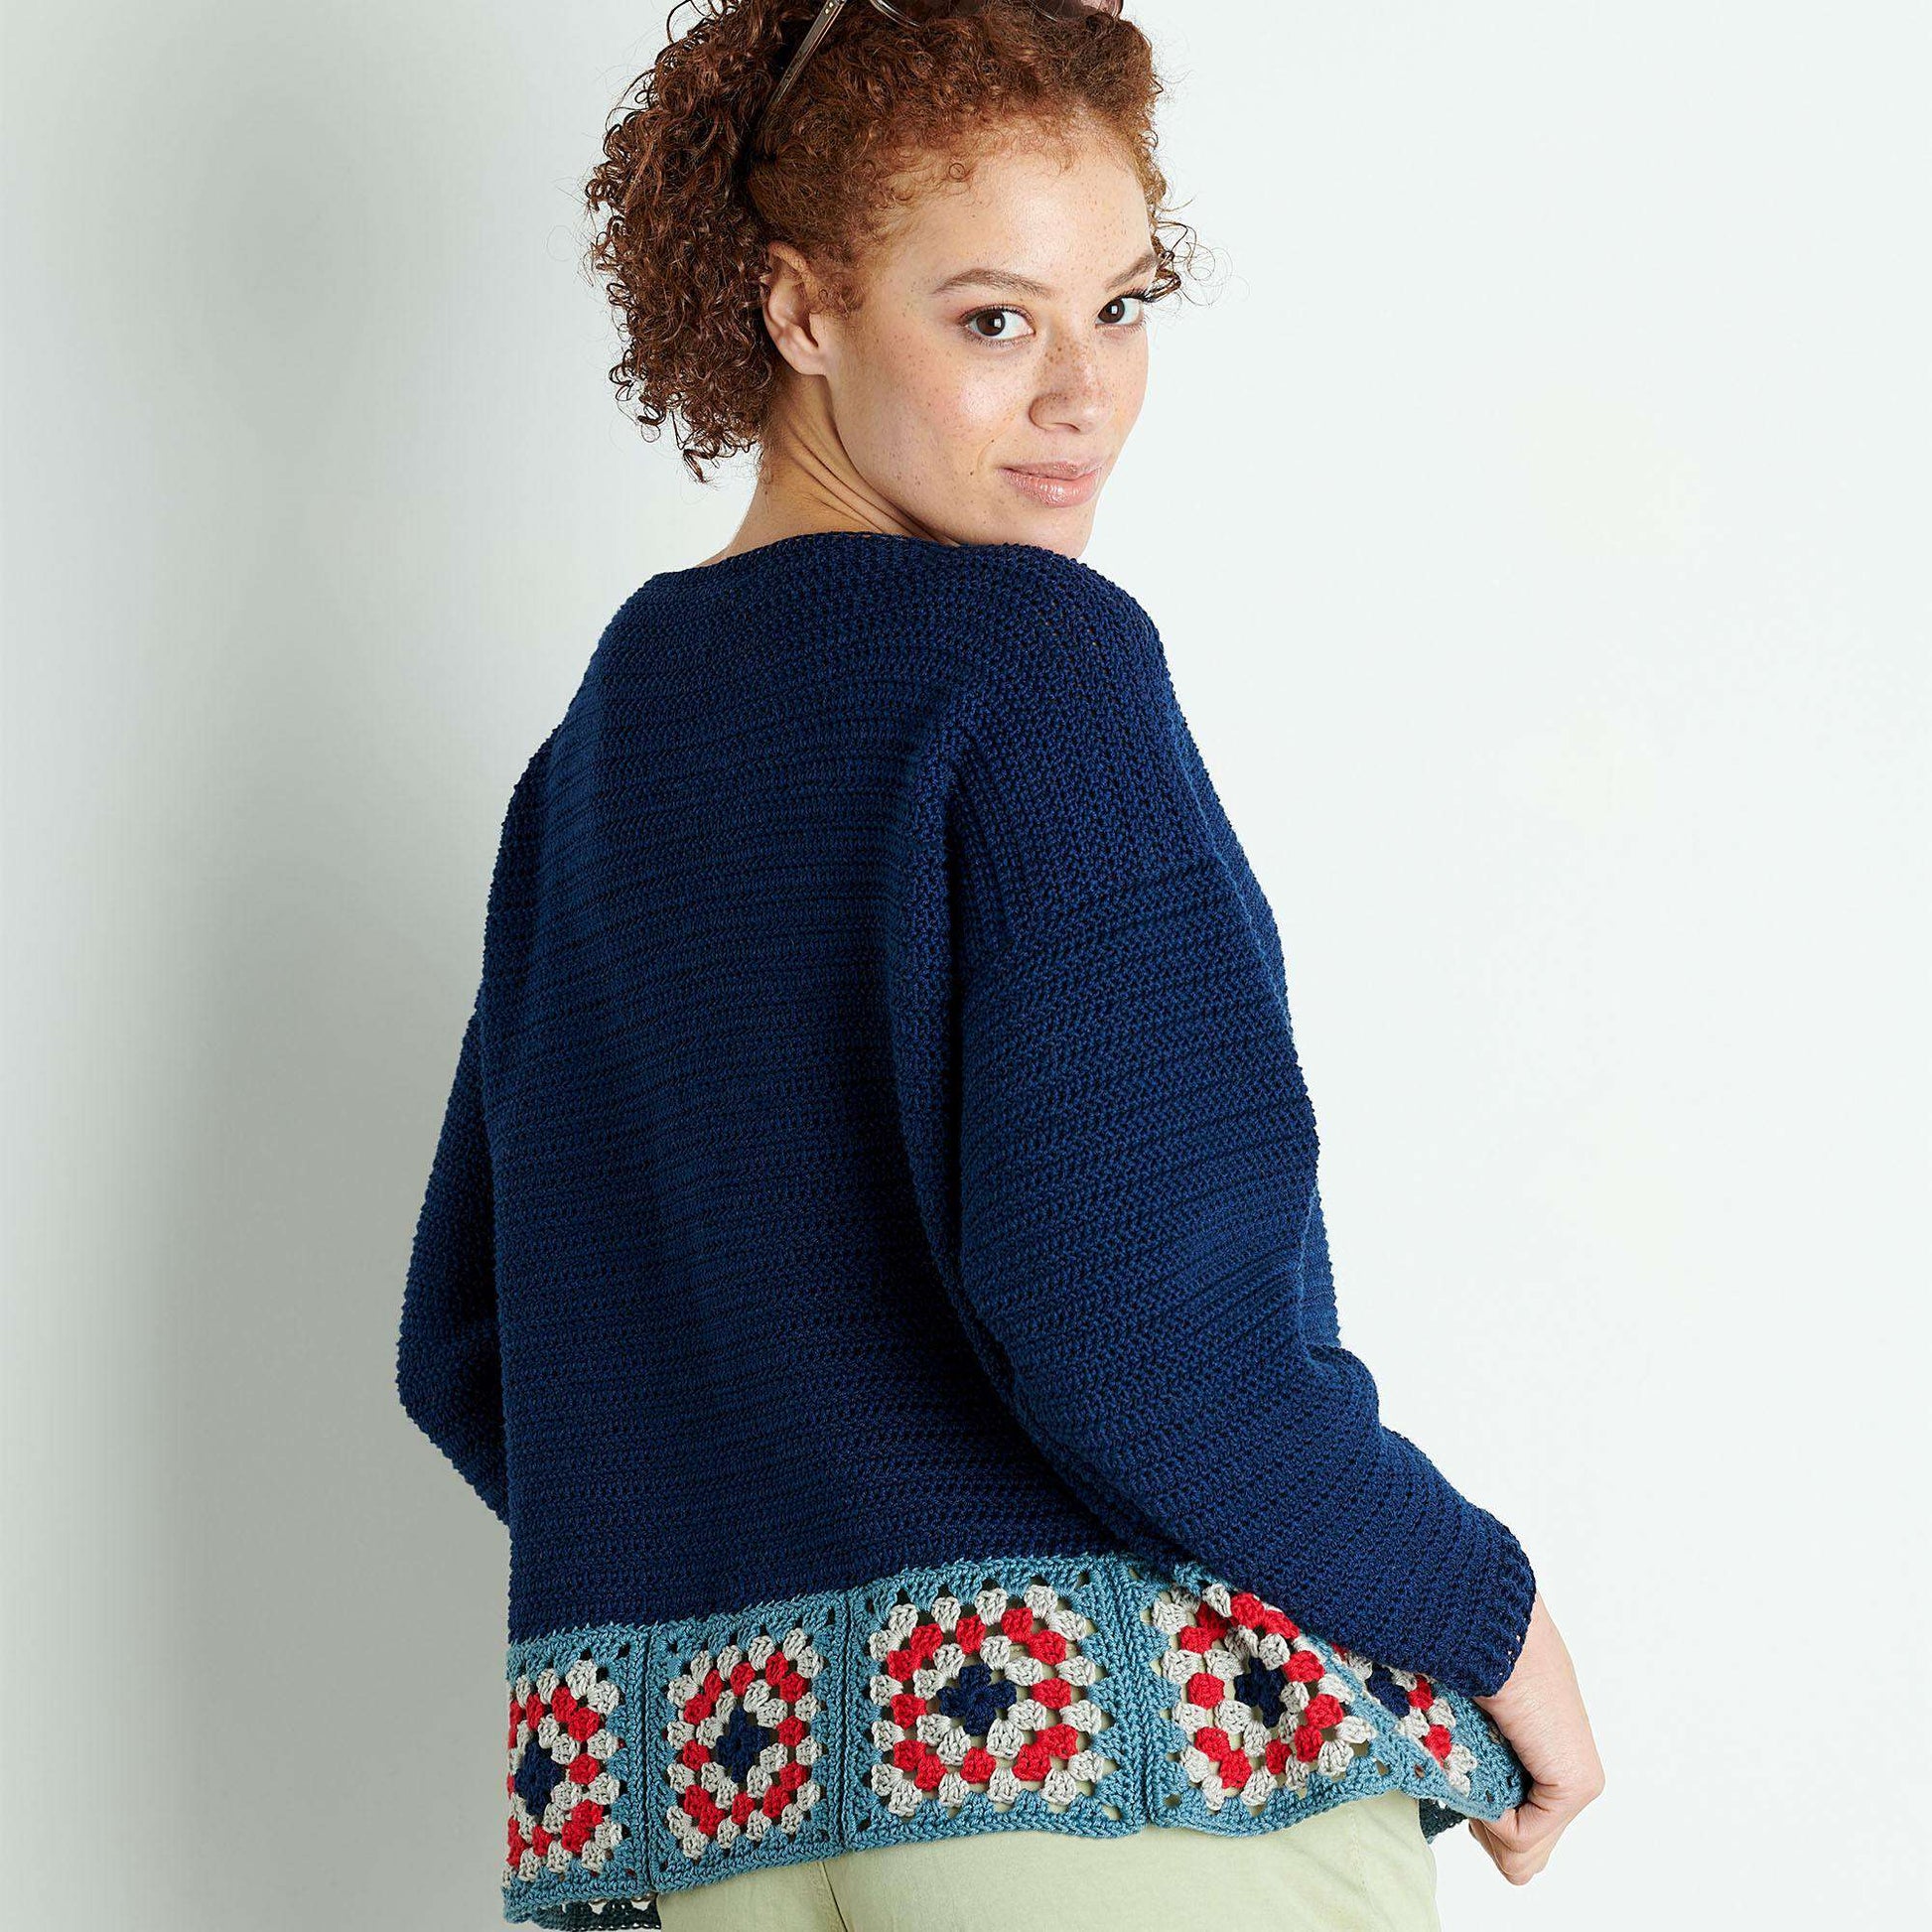 Free Patons Motif Trim Crochet Top Pattern